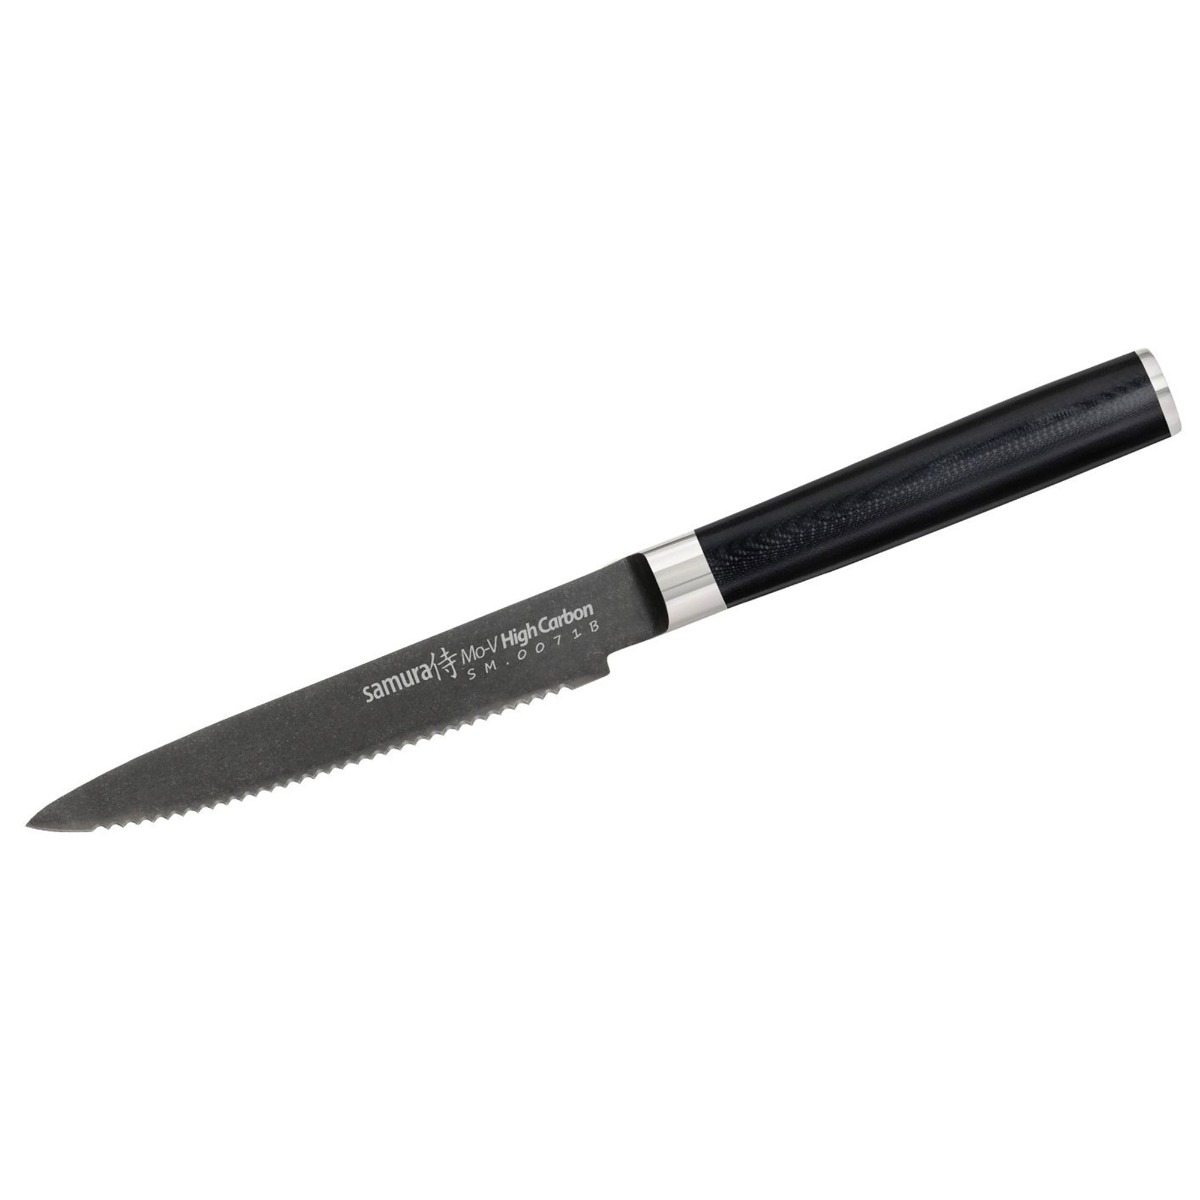 Τomato knife 12m, MO-V STONEWASH - SAMURA®